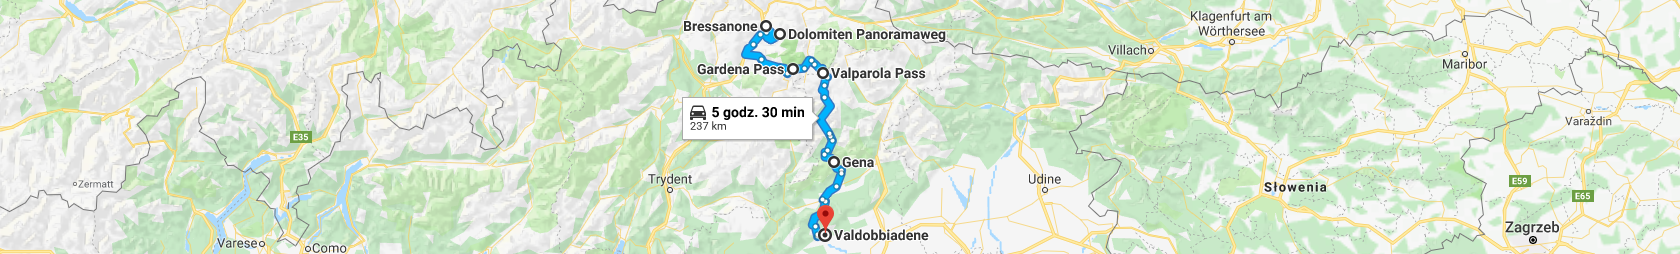 Trasa z Bressanone przez Plose, przełęcze Gardenia i Valparola do Valdobbiadene